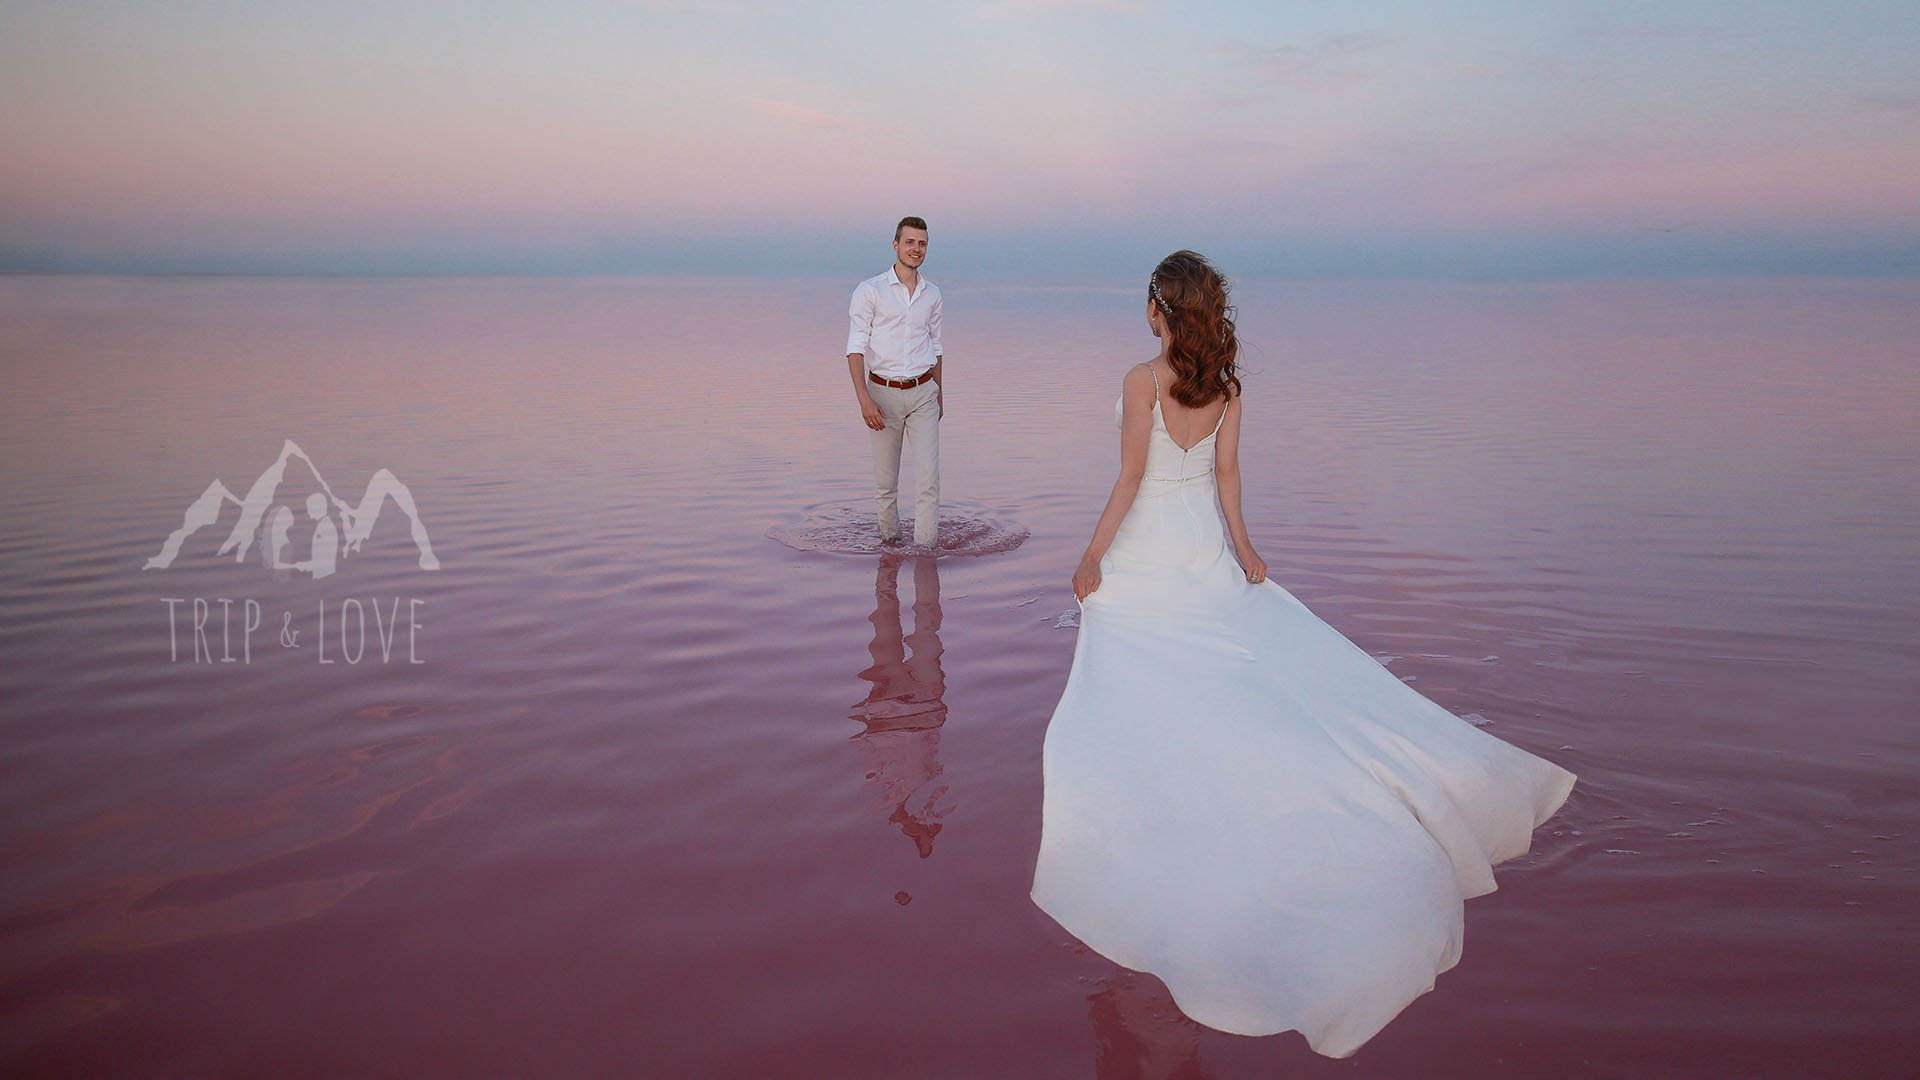 Trip and love / Свадьба для двоих в Крыму / Горы, розовое озеро, море